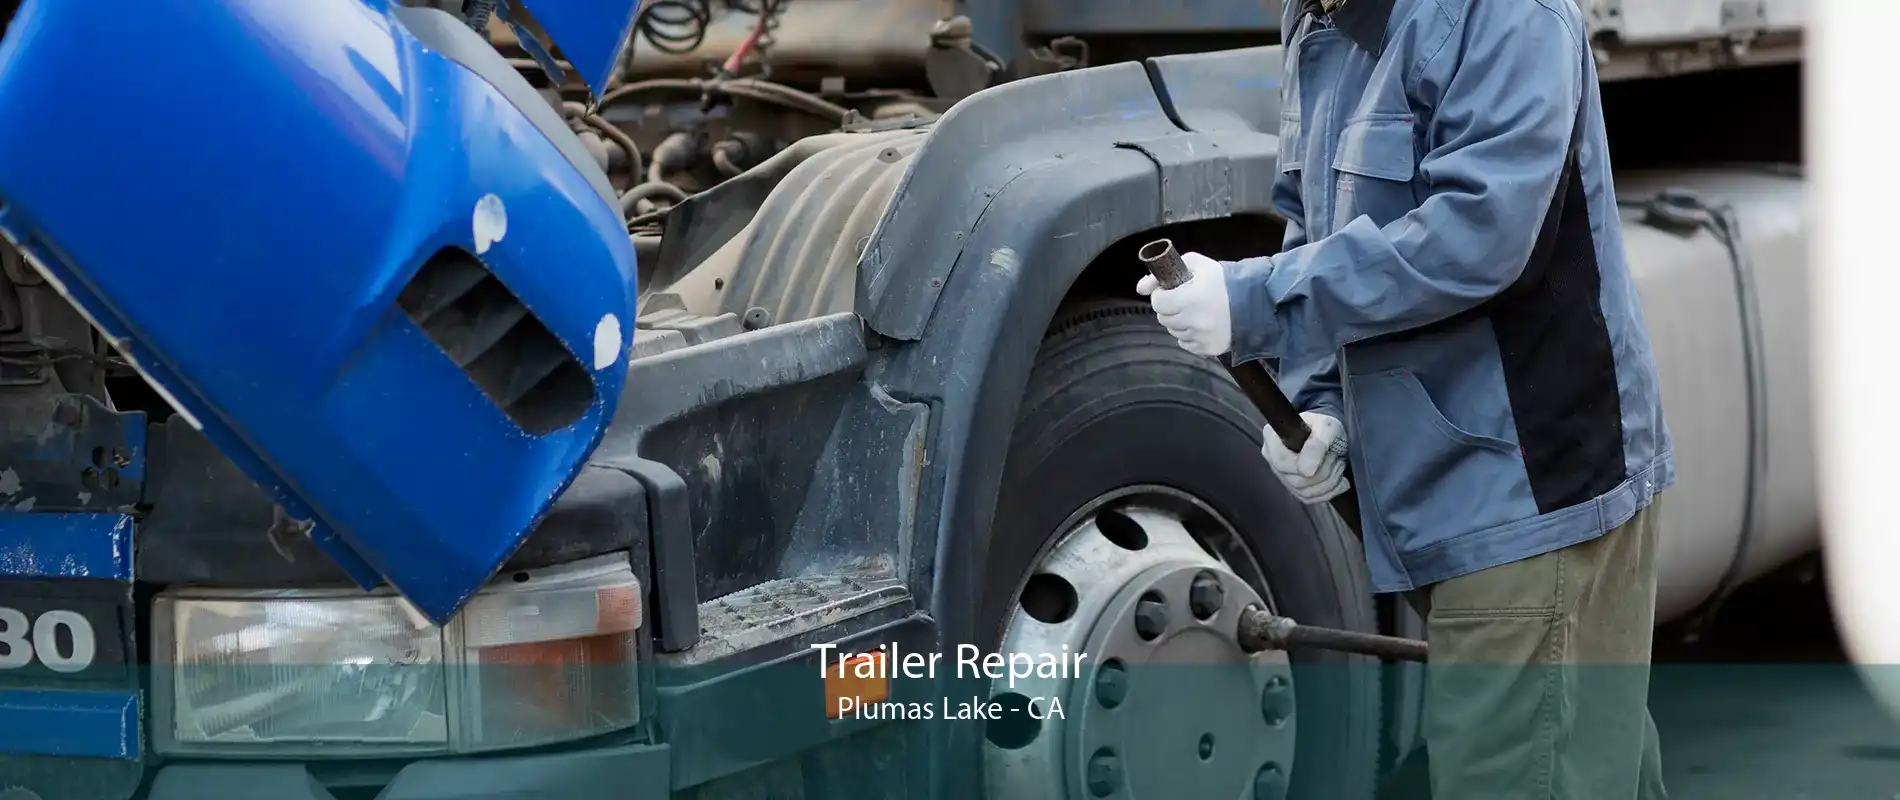 Trailer Repair Plumas Lake - CA